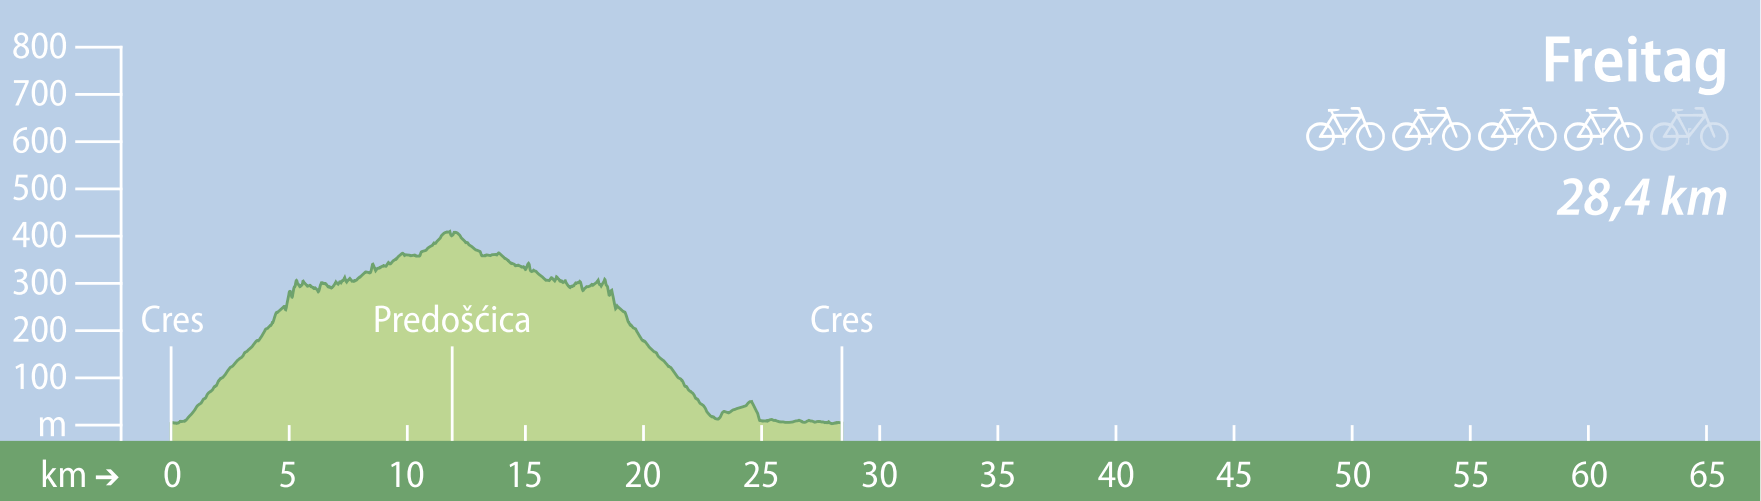 Etappe Insel Cres